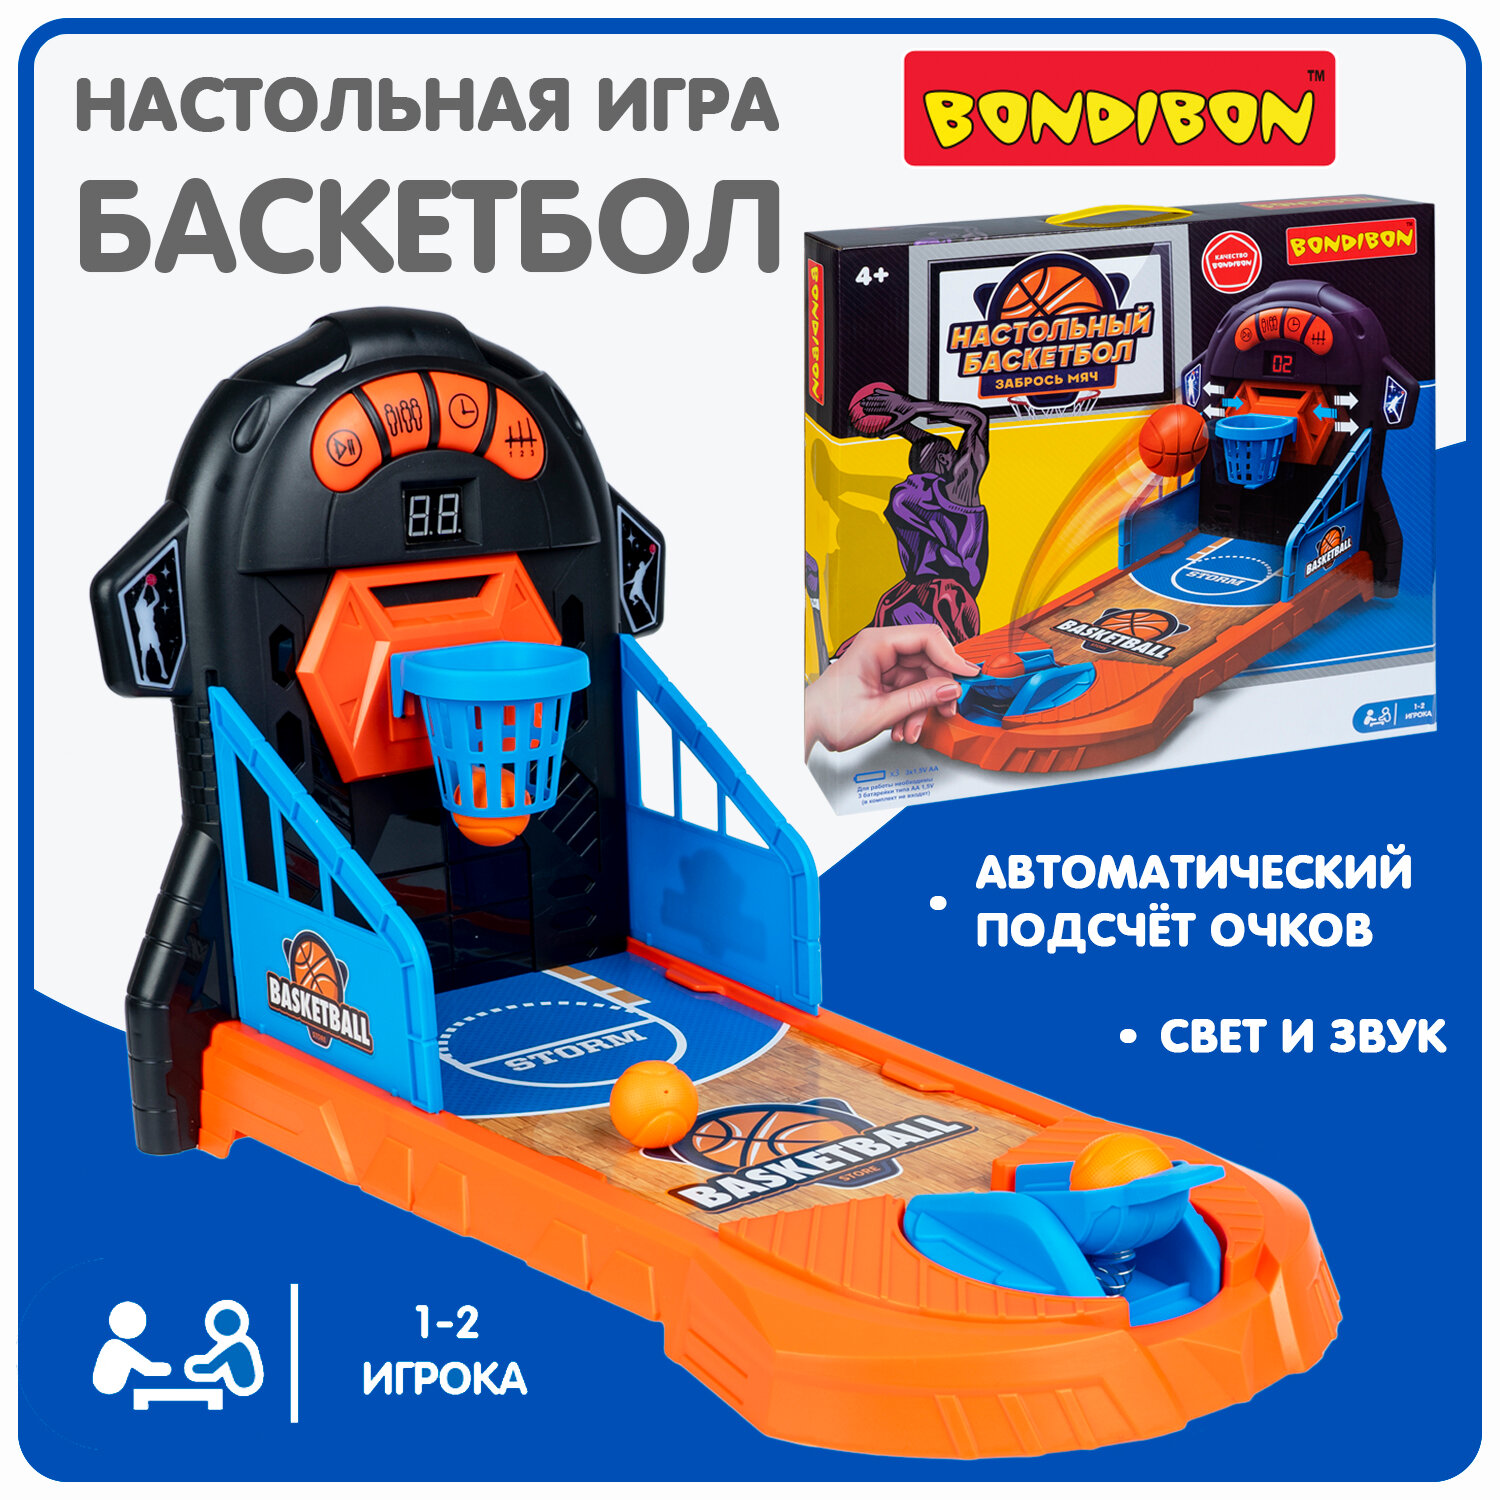 Настольная игра Bondibon «забрось МЯЧ», свет, звук, подсчёт очков, Box